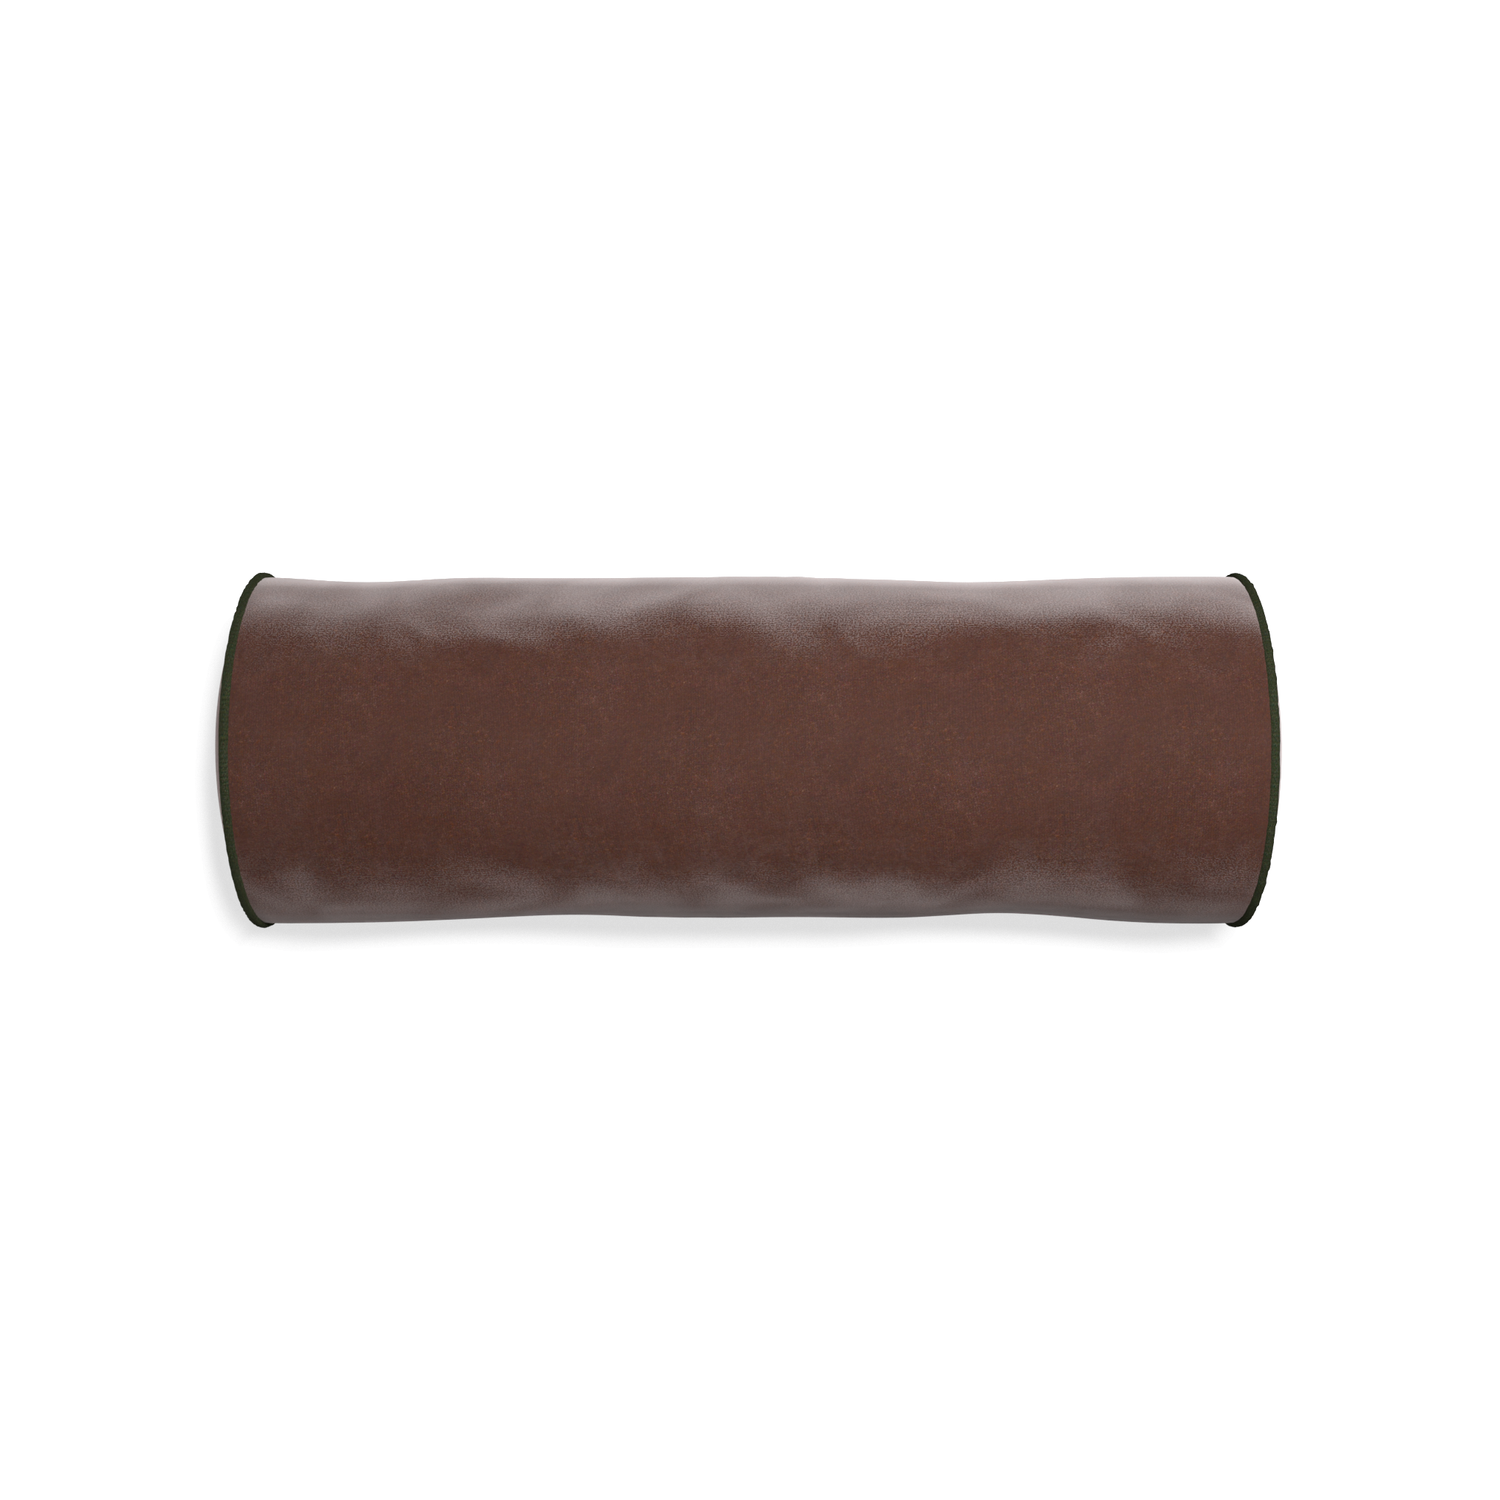 Bolster walnut velvet custom pillow with f piping on white background